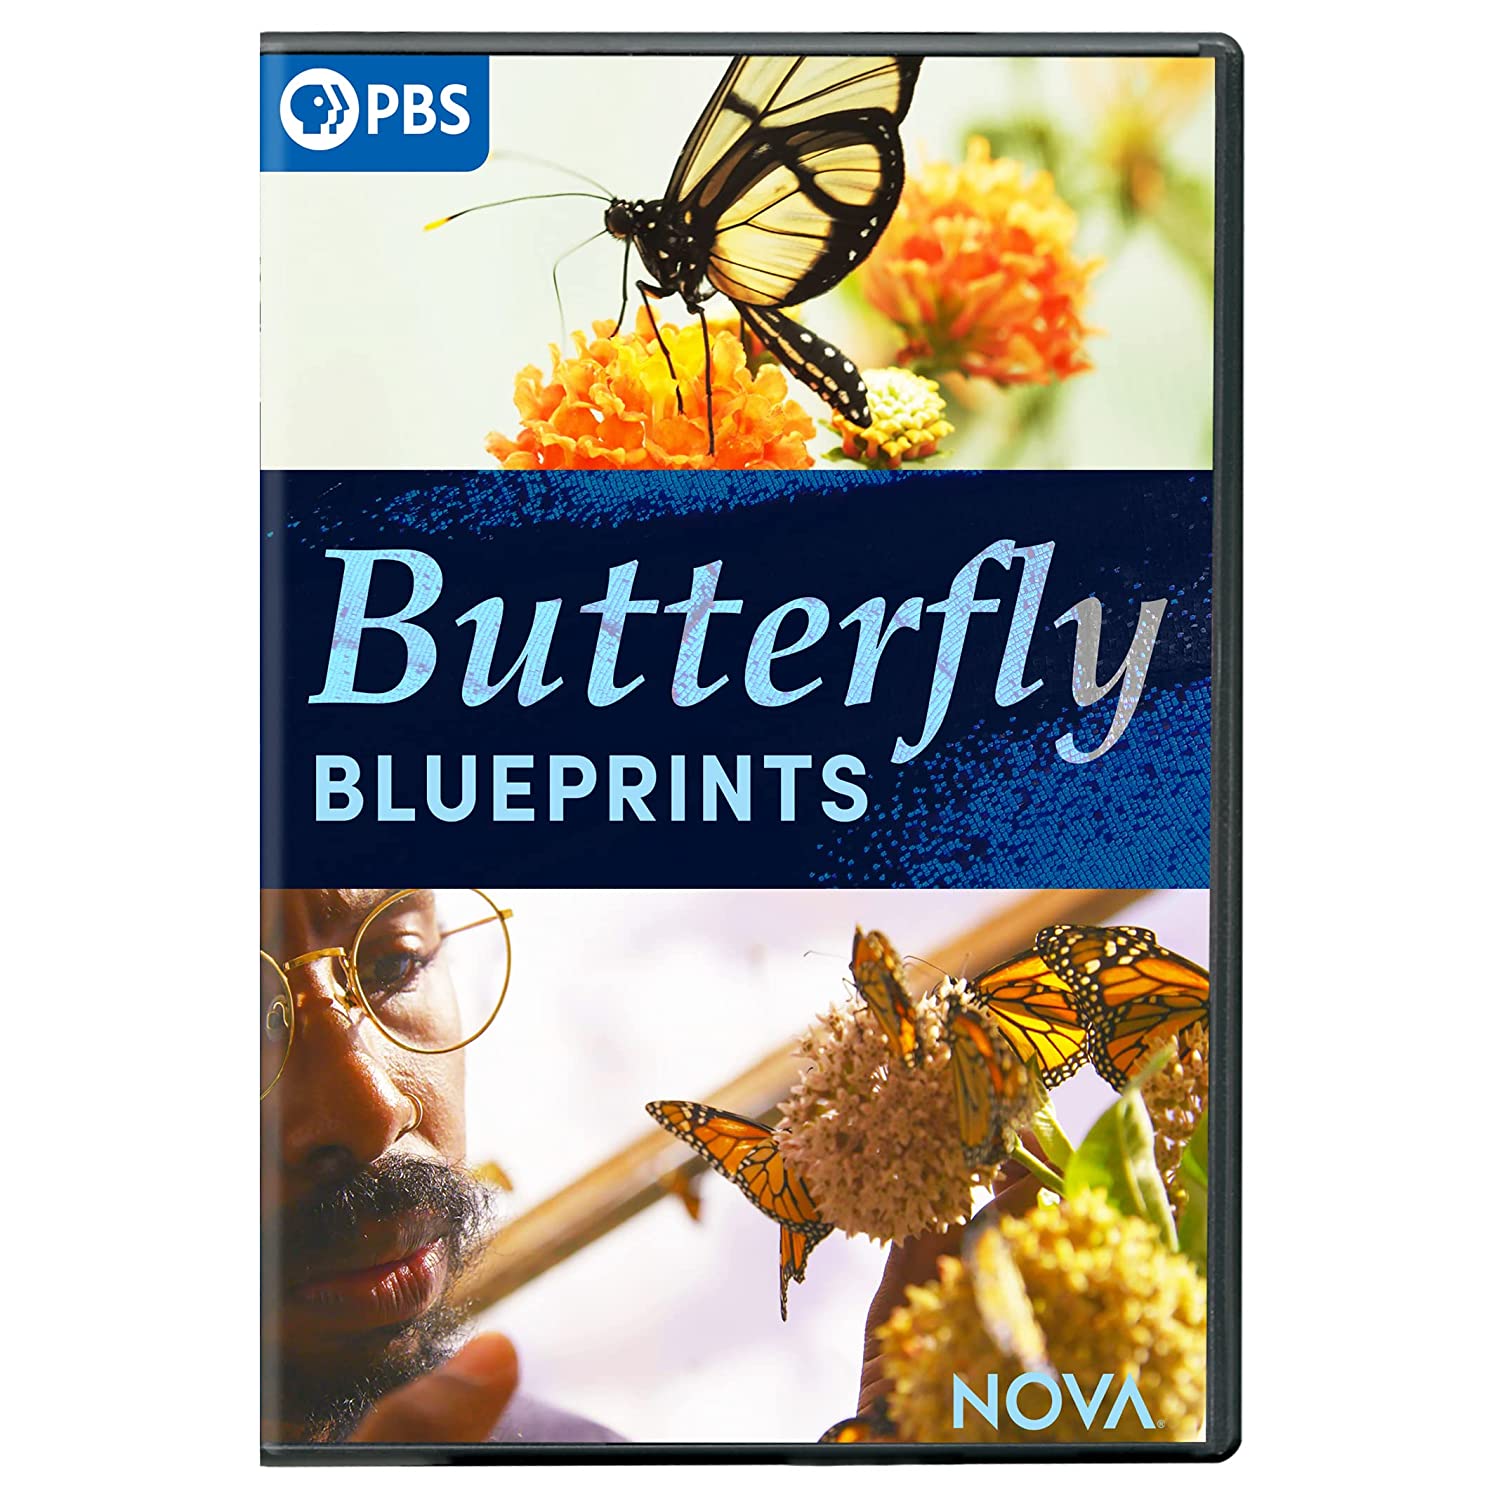 "Nova" Butterfly Blueprints